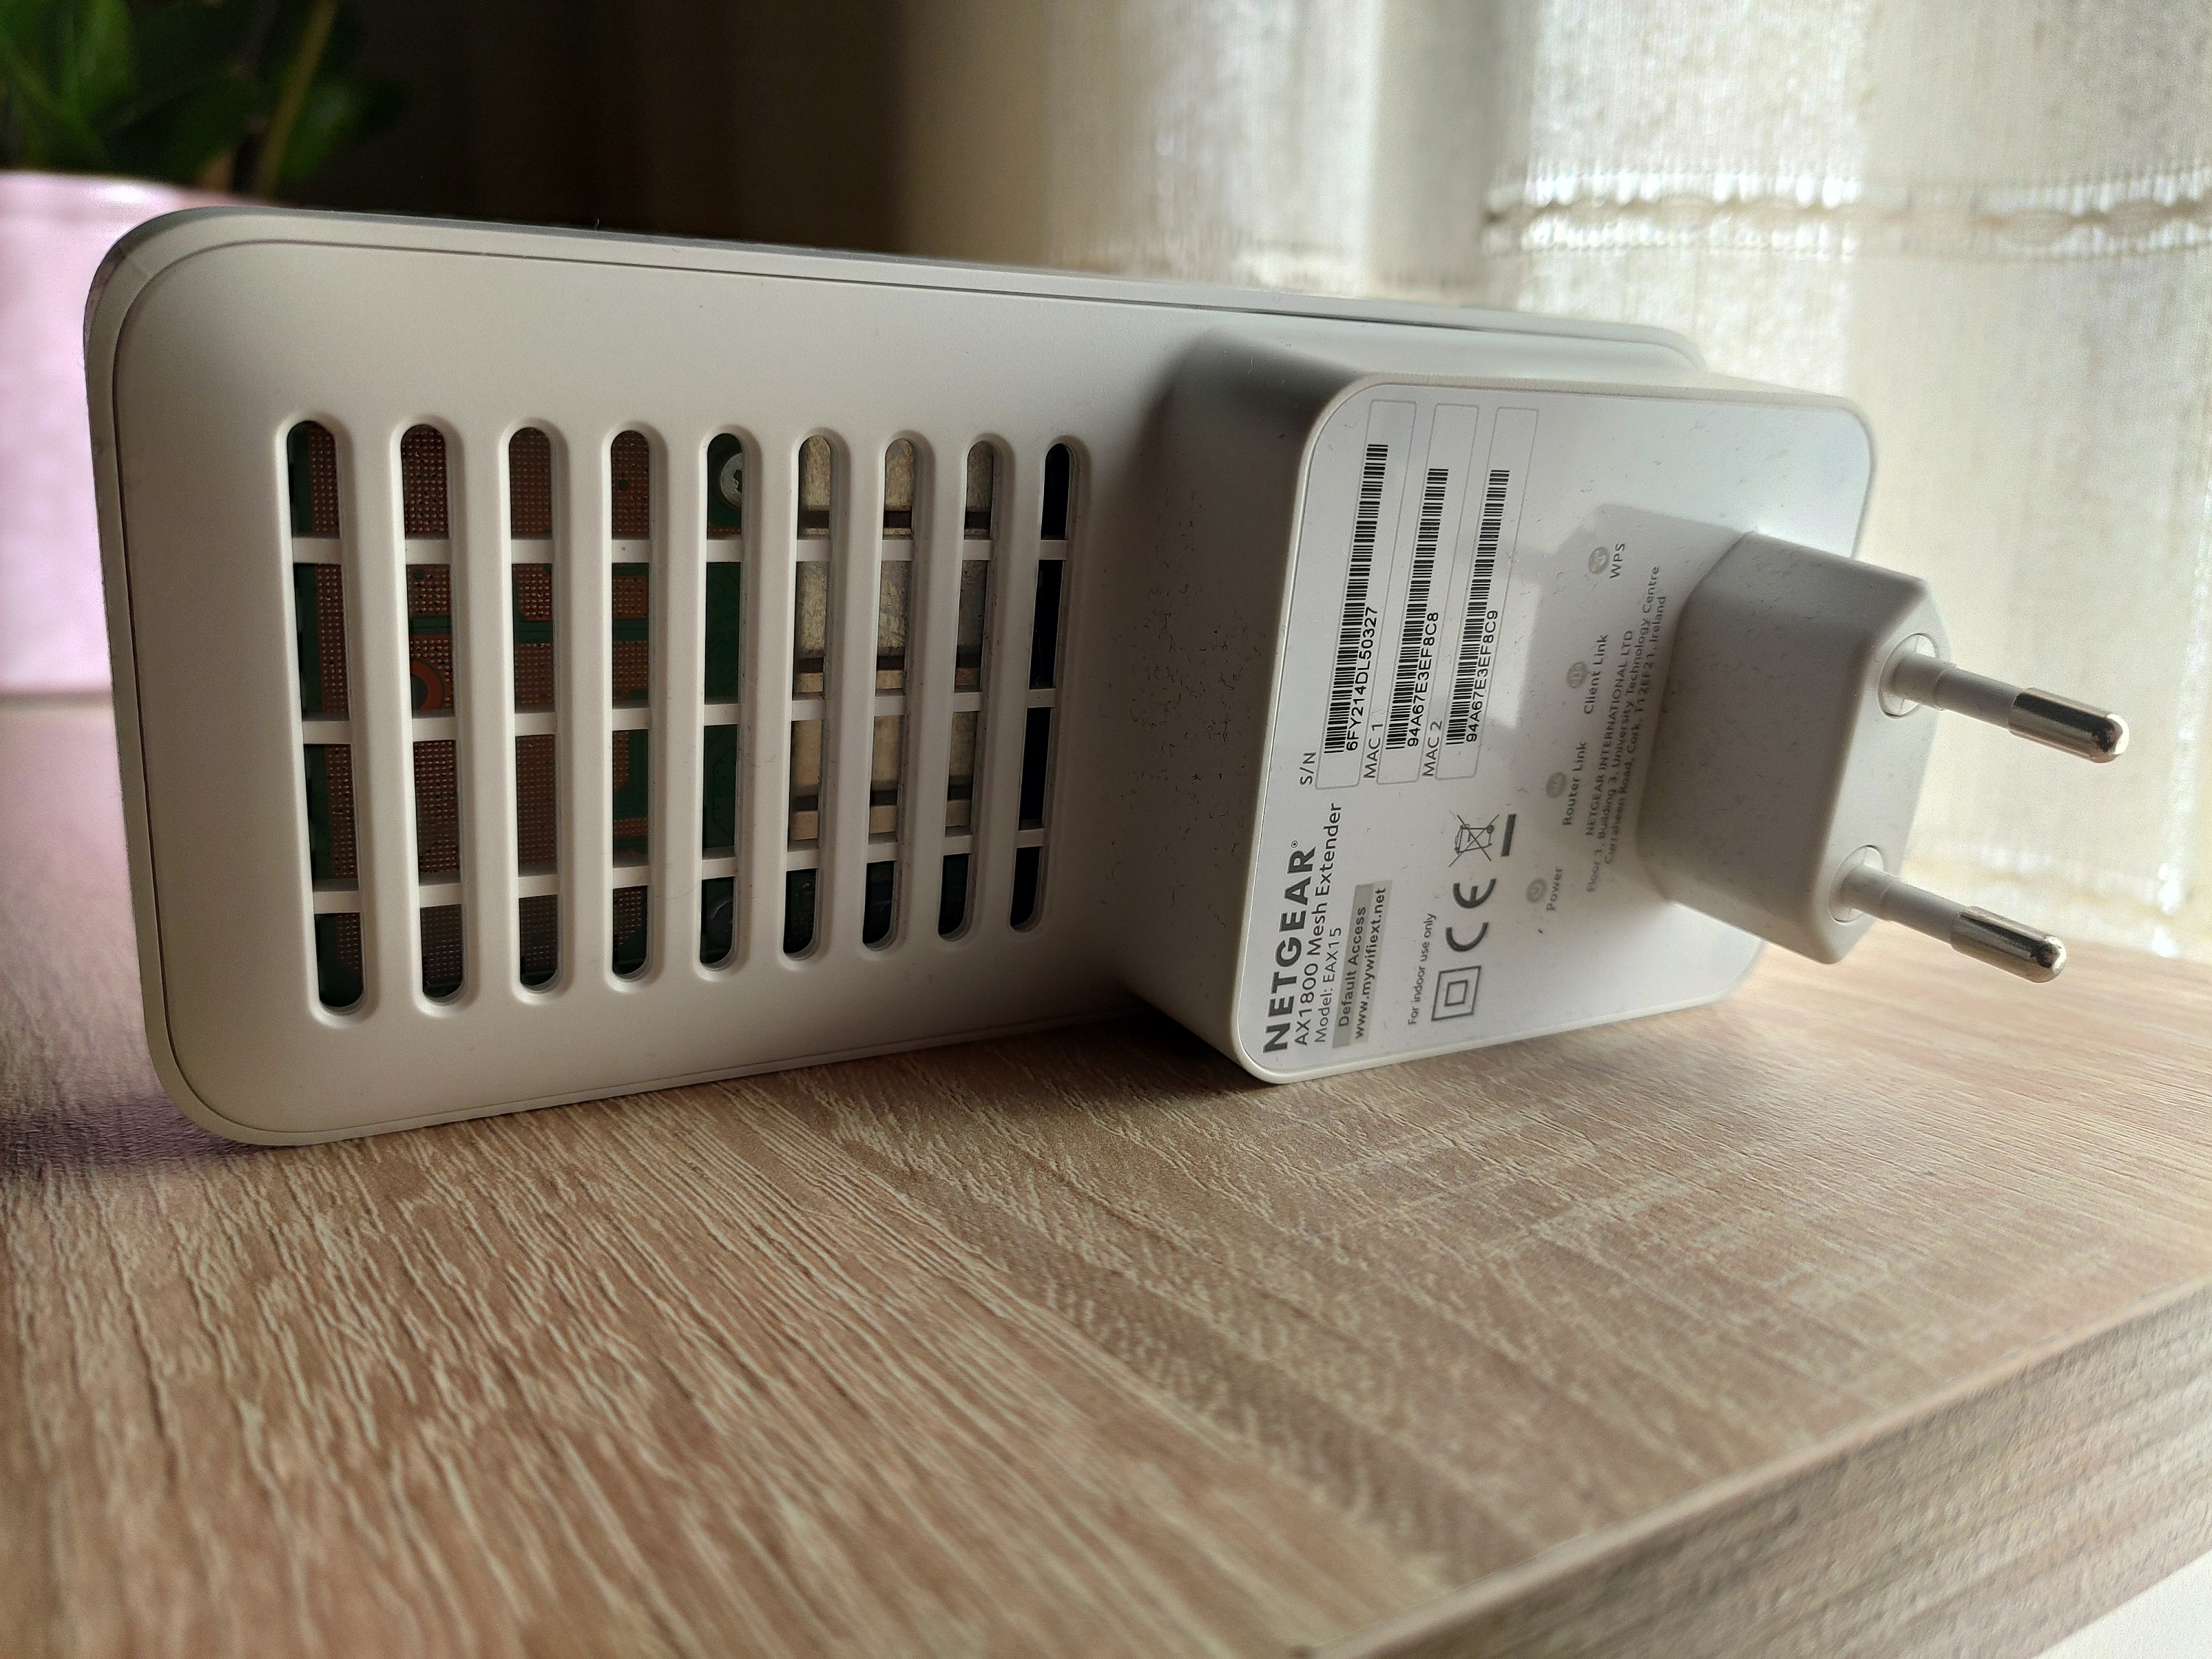 Test : Netgear offre une bonne solution pour doubler la portée Wi-Fi des box